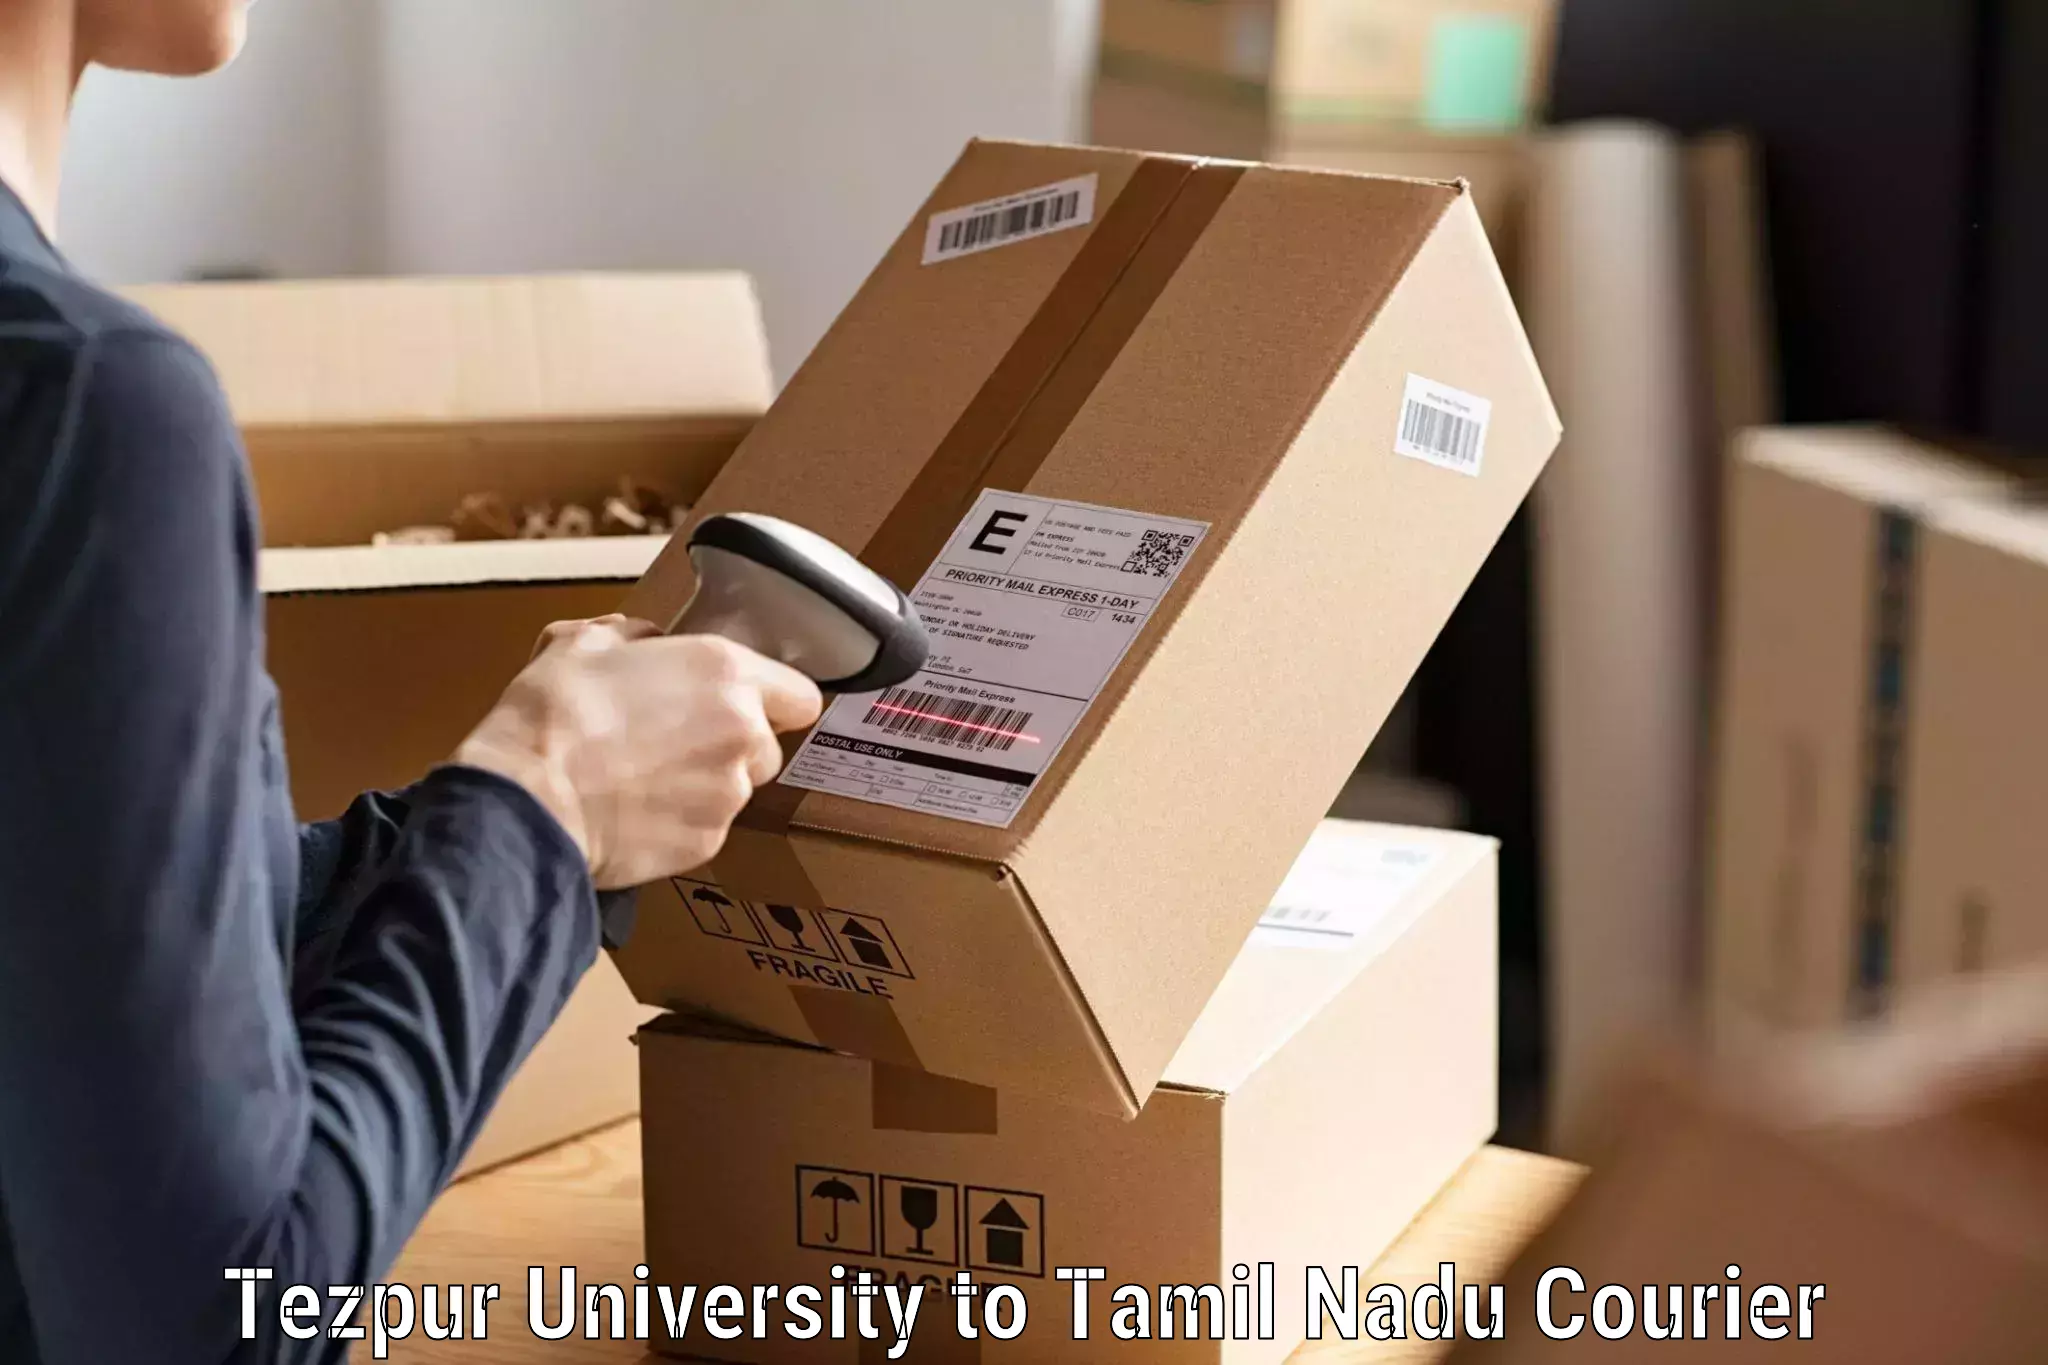 Express logistics service Tezpur University to Parangimalai